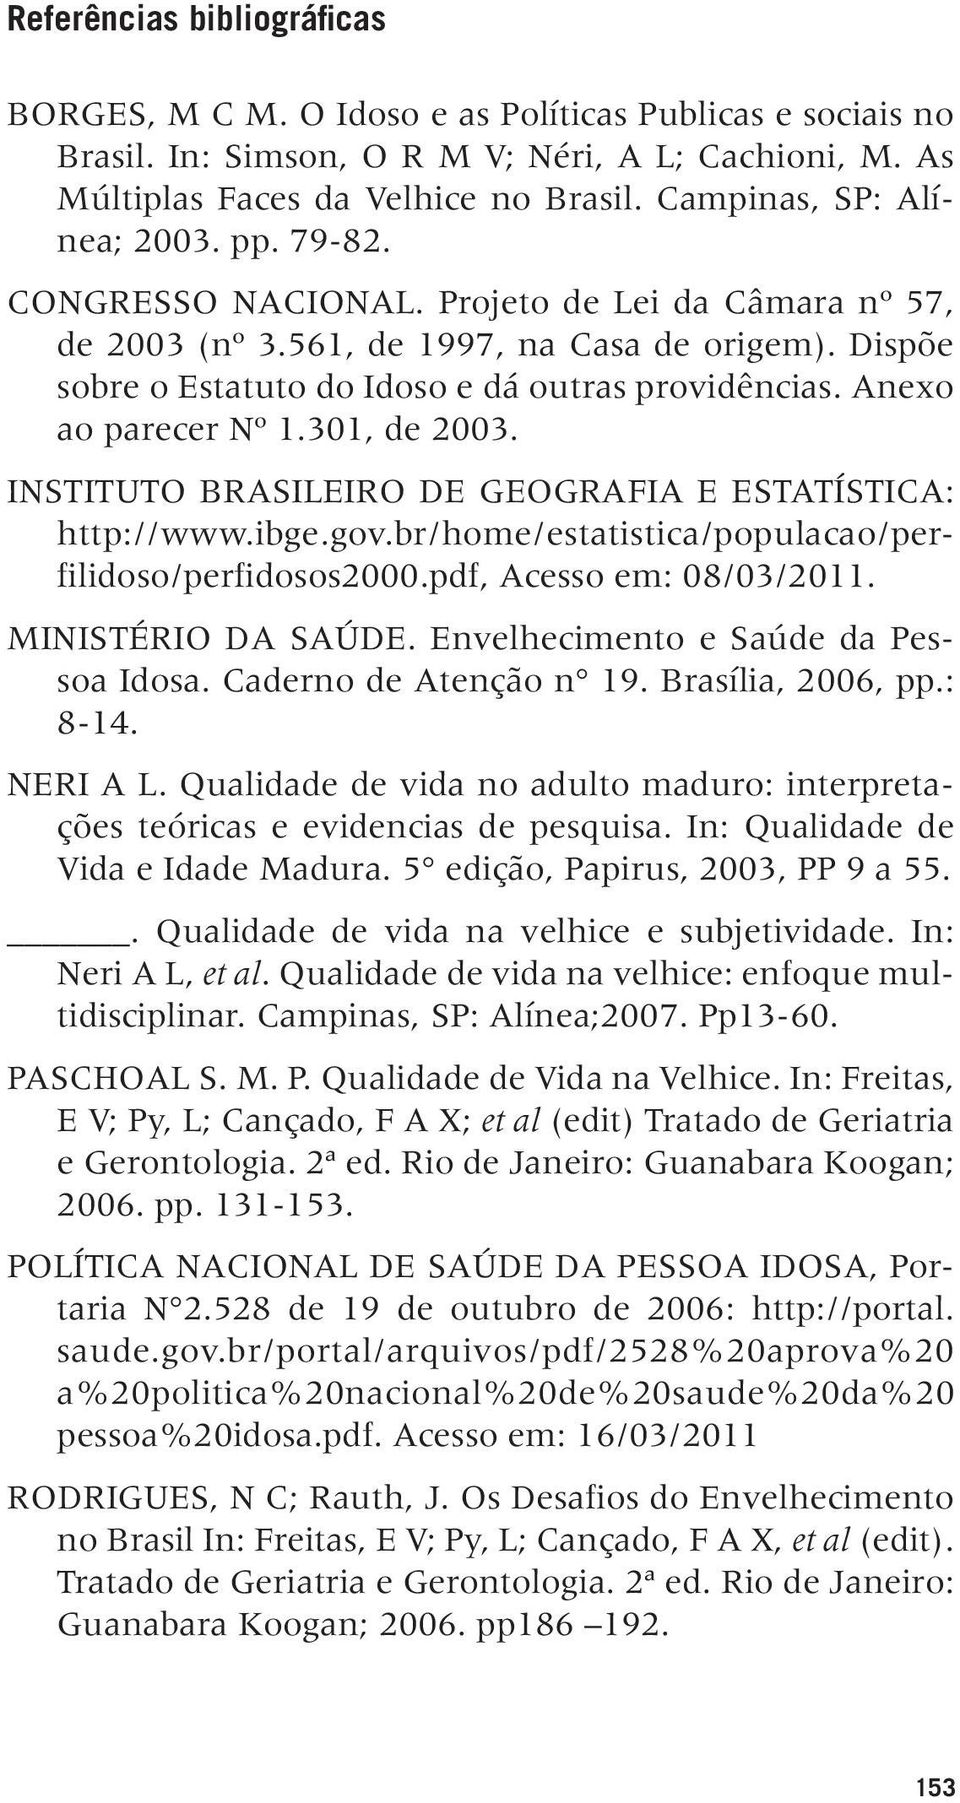 Anexo ao parecer Nº 1.301, de 2003. Instituto Brasileiro de Geografia e Estatística: http://www.ibge.gov.br/home/estatistica/populacao/perfilidoso/perfidosos2000.pdf, Acesso em: 08/03/2011.